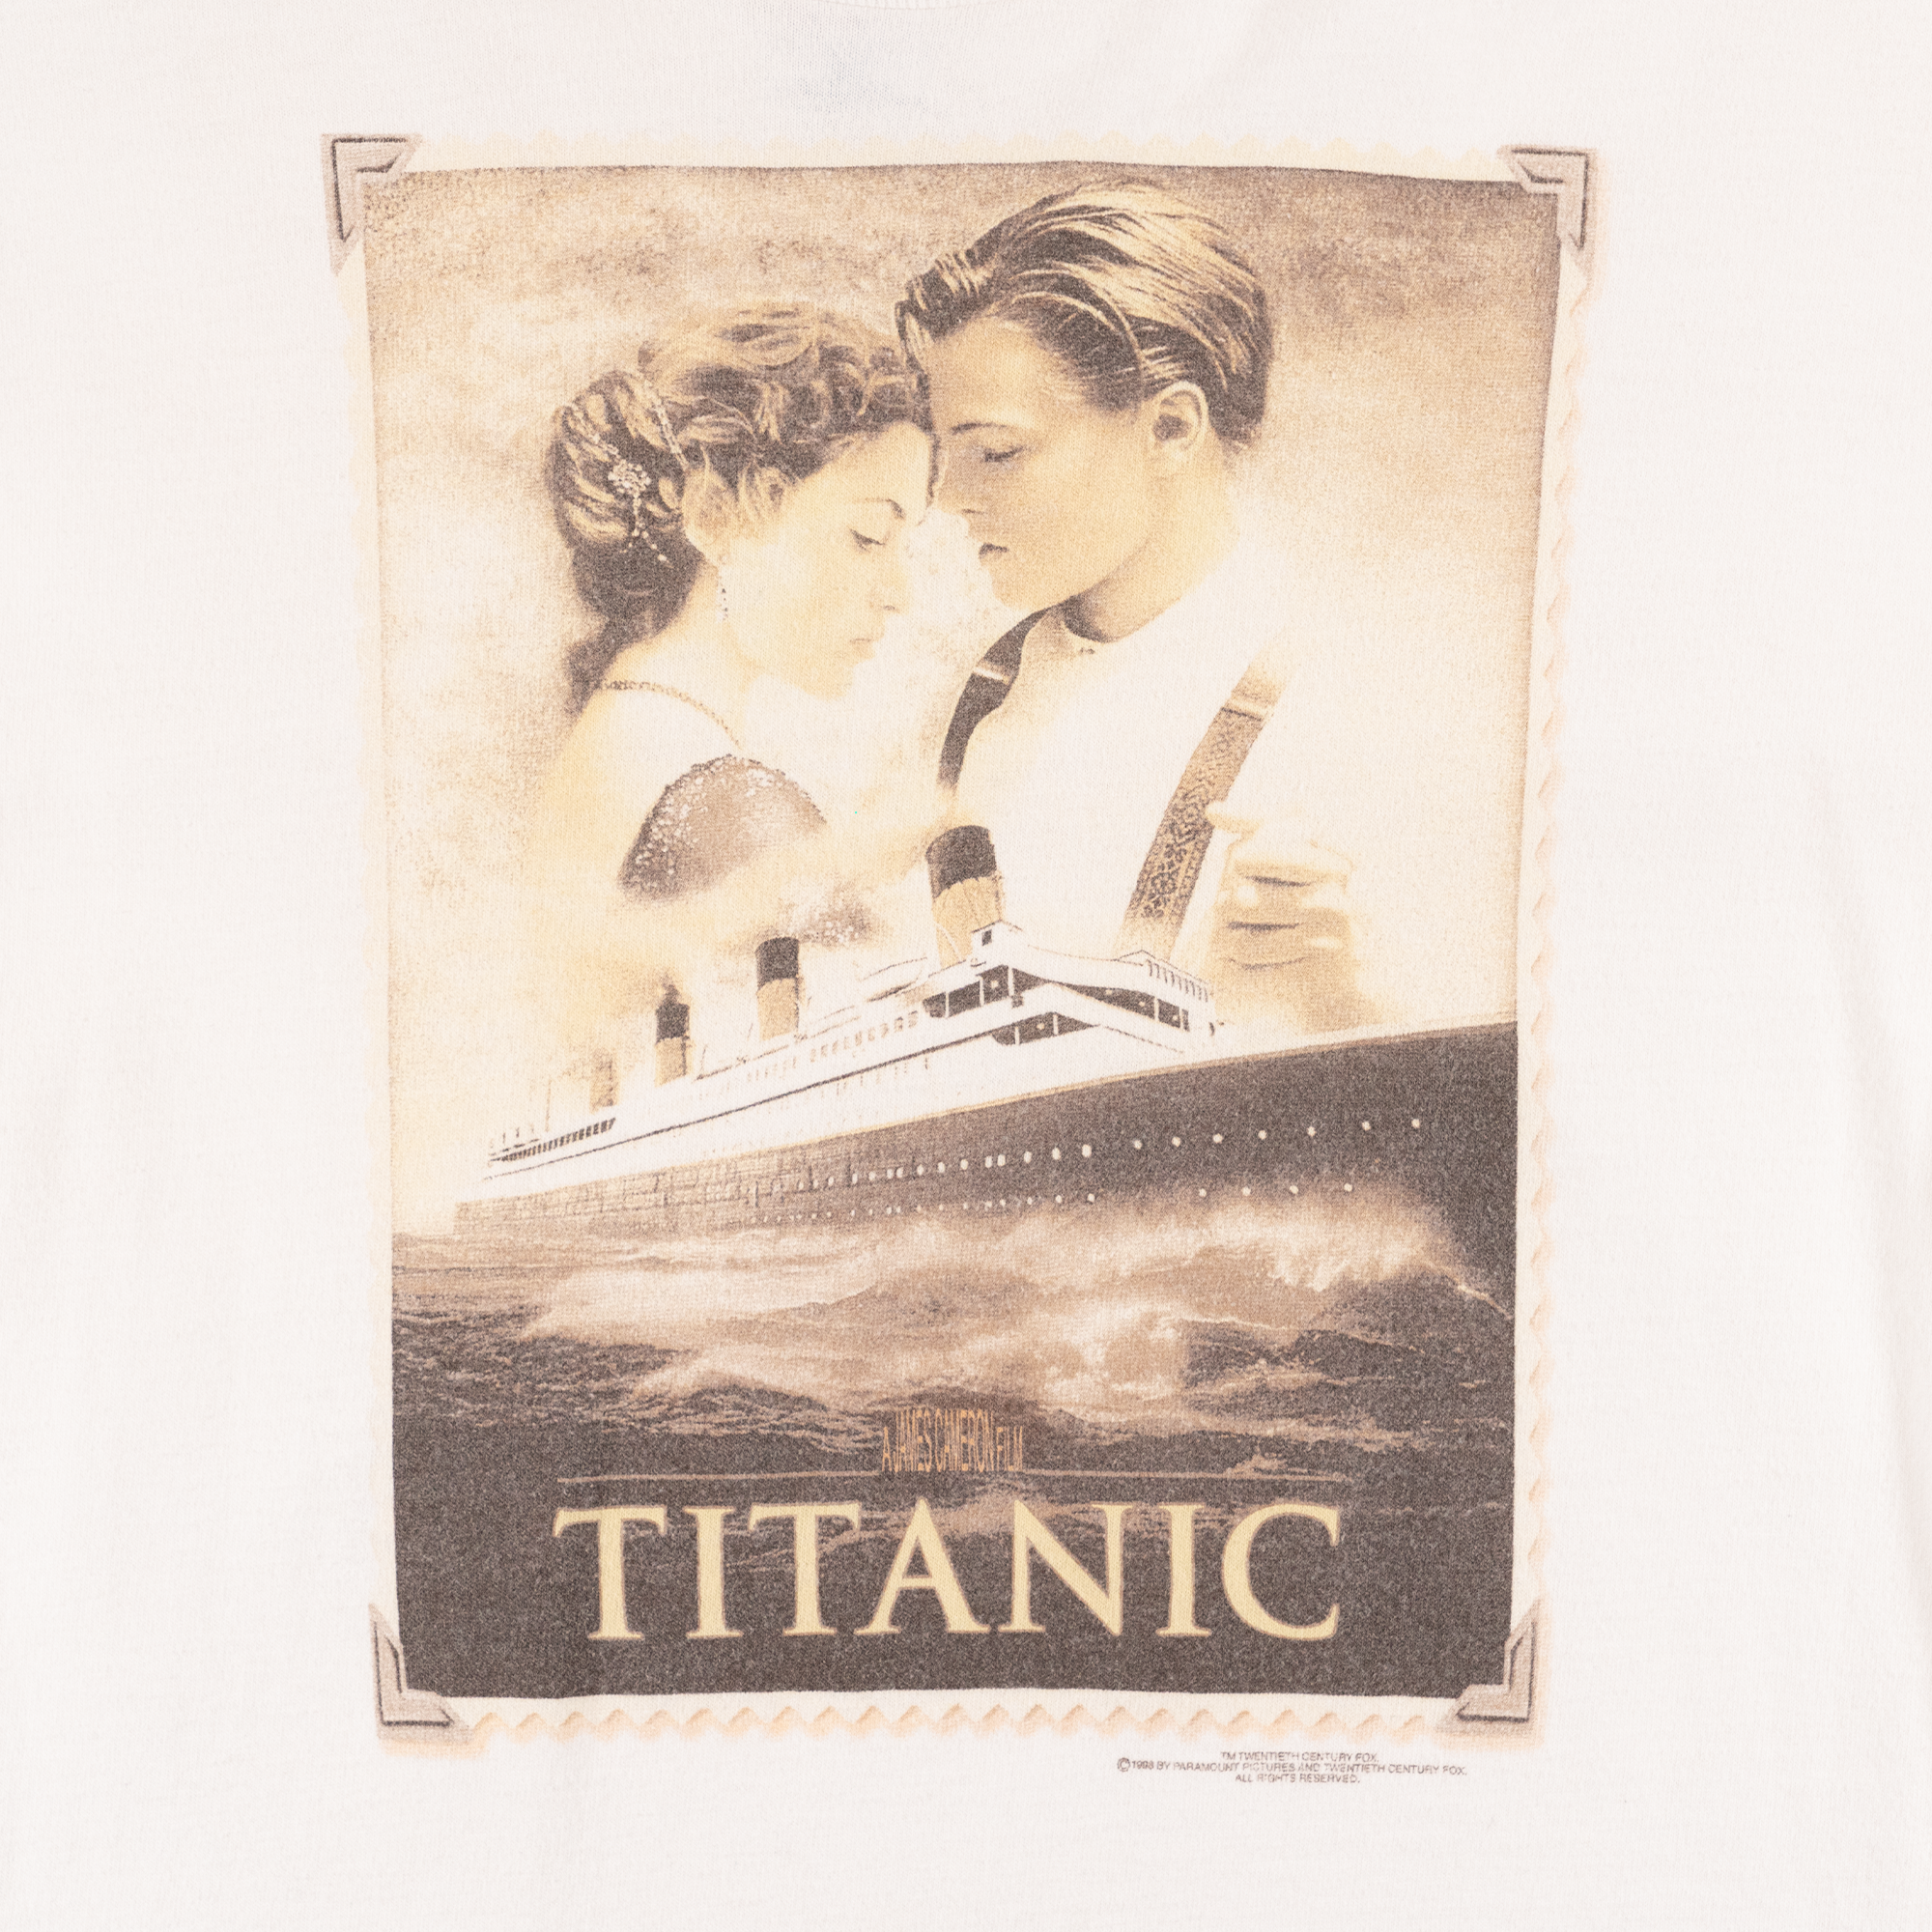 Titanic Movie 1998 Tee White-PLUS